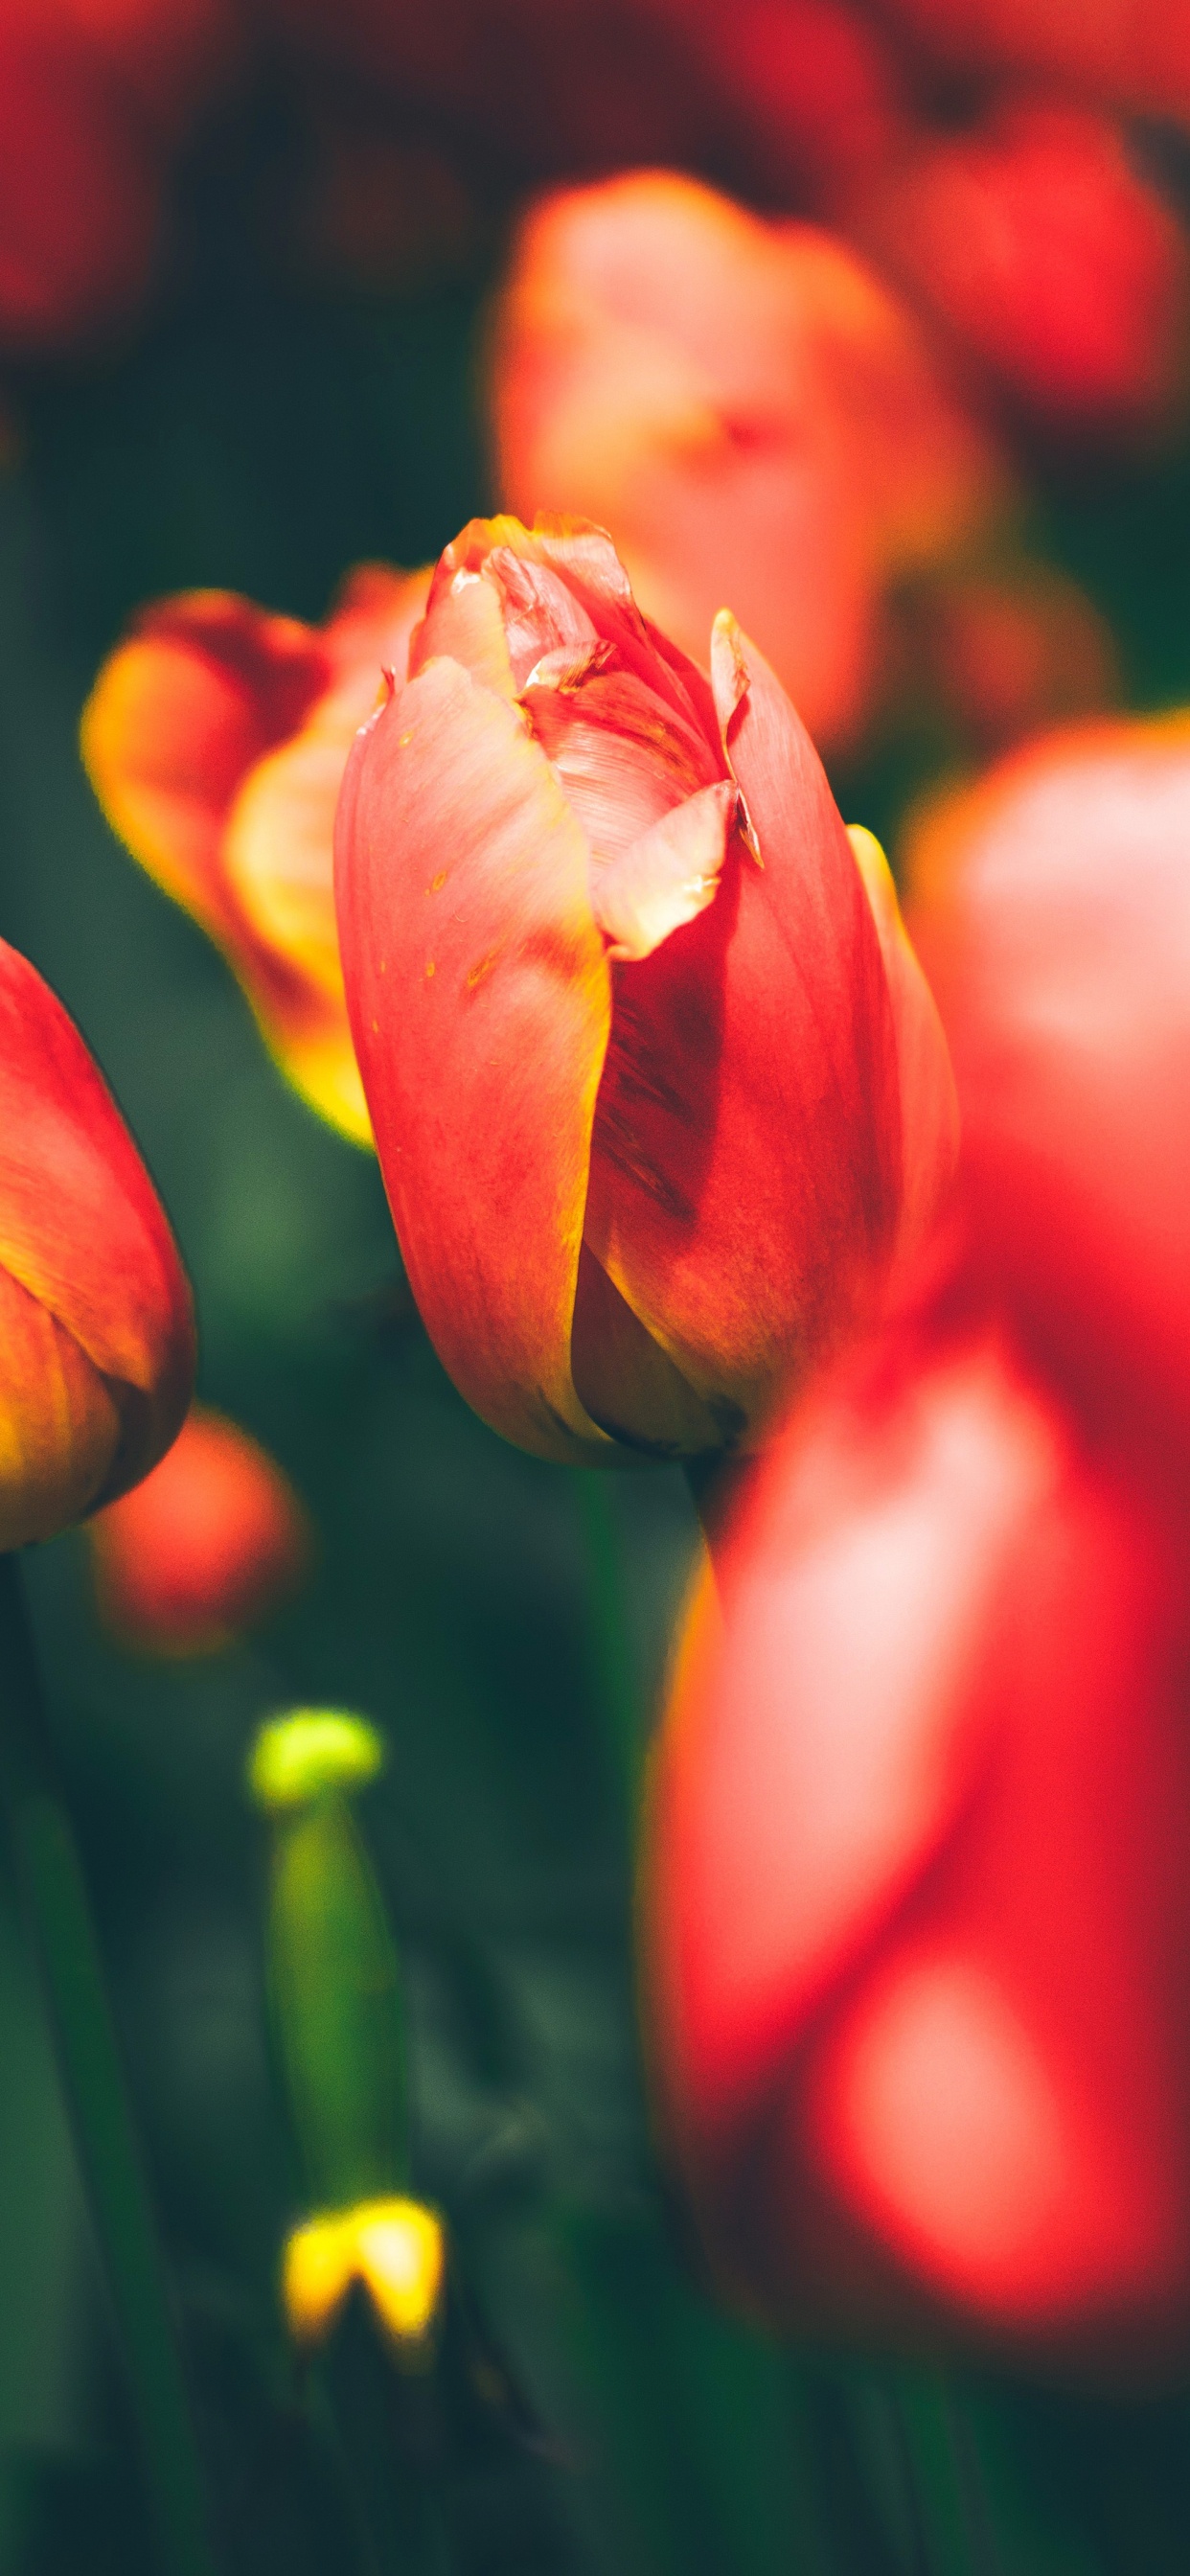 Tulipes Rouges en Fleurs Pendant la Journée. Wallpaper in 1242x2688 Resolution